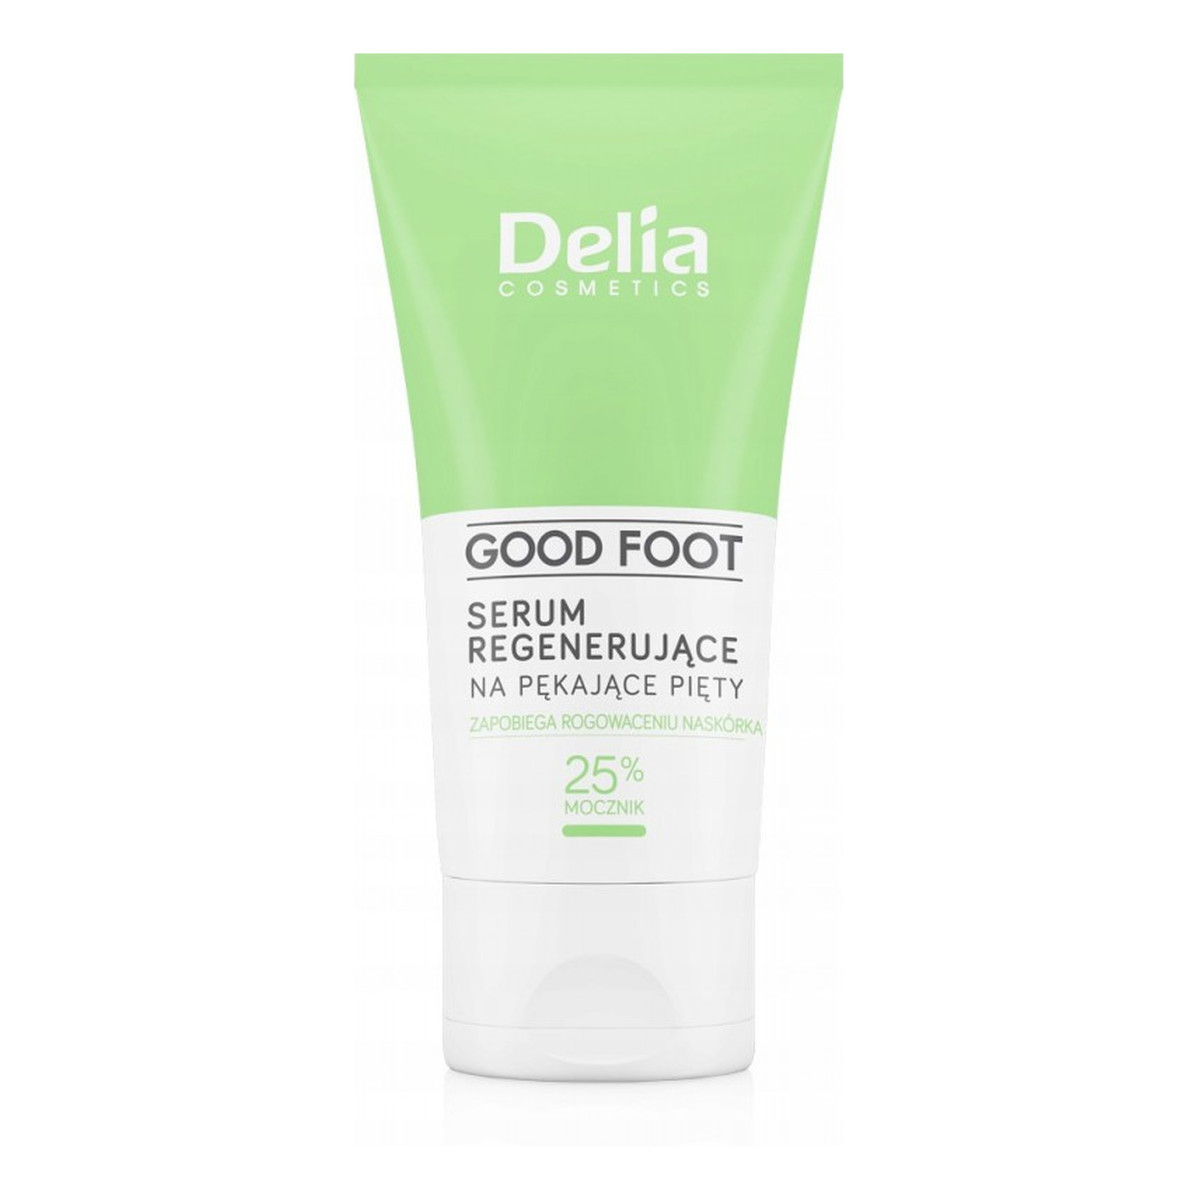 Delia Good Foot Serum regenerujące na pękające pięty - 25% Mocznik 60ml